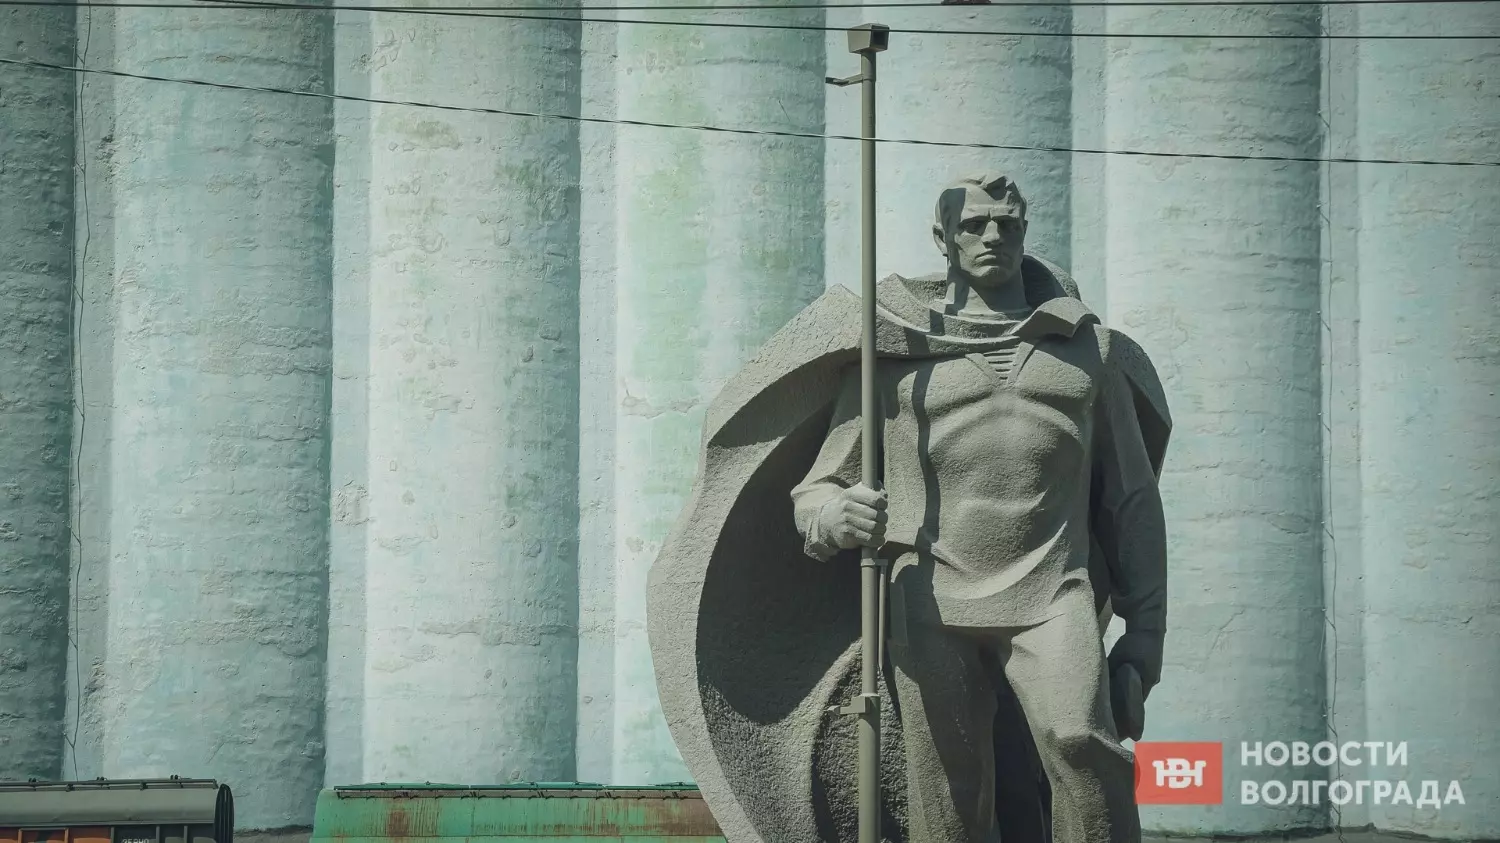 Волгоградский элеватор -  важный символ героического прошлого города